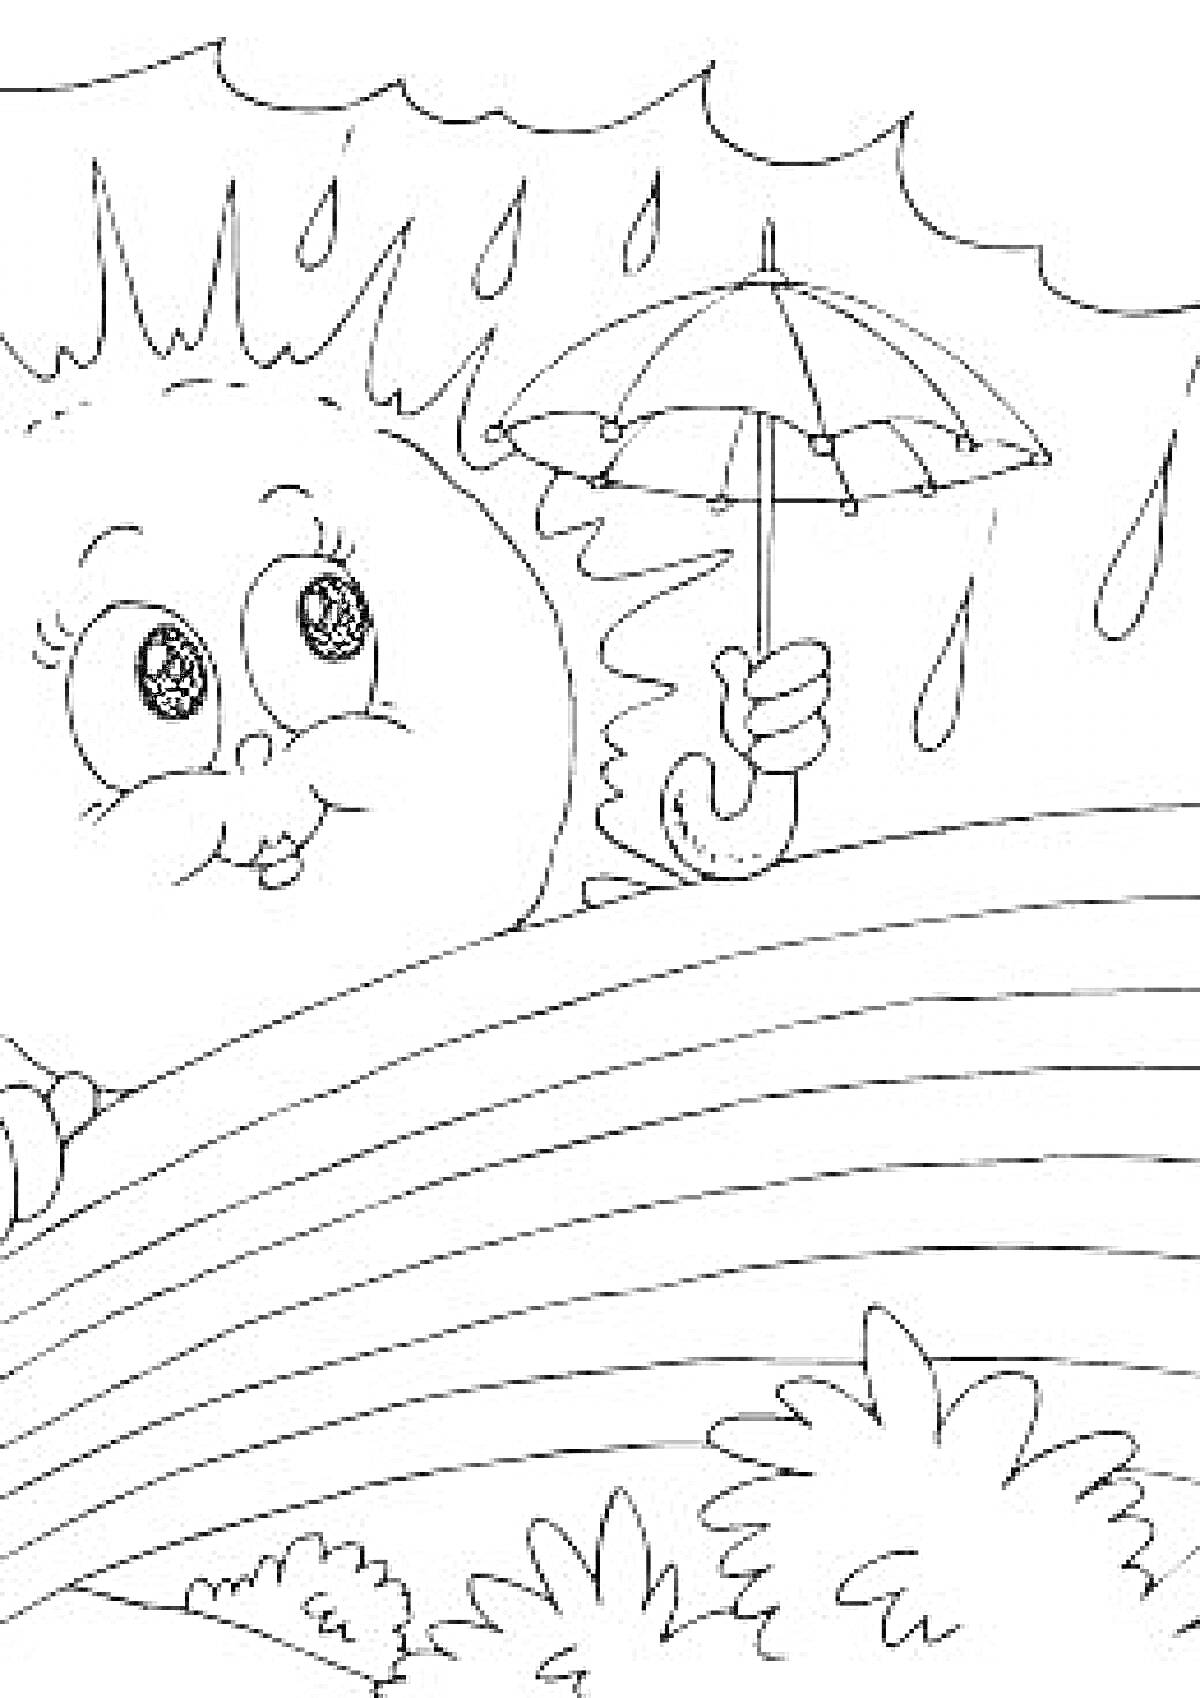 Солнышко с зонтиком, радуга, облака, капли дождя и кусты